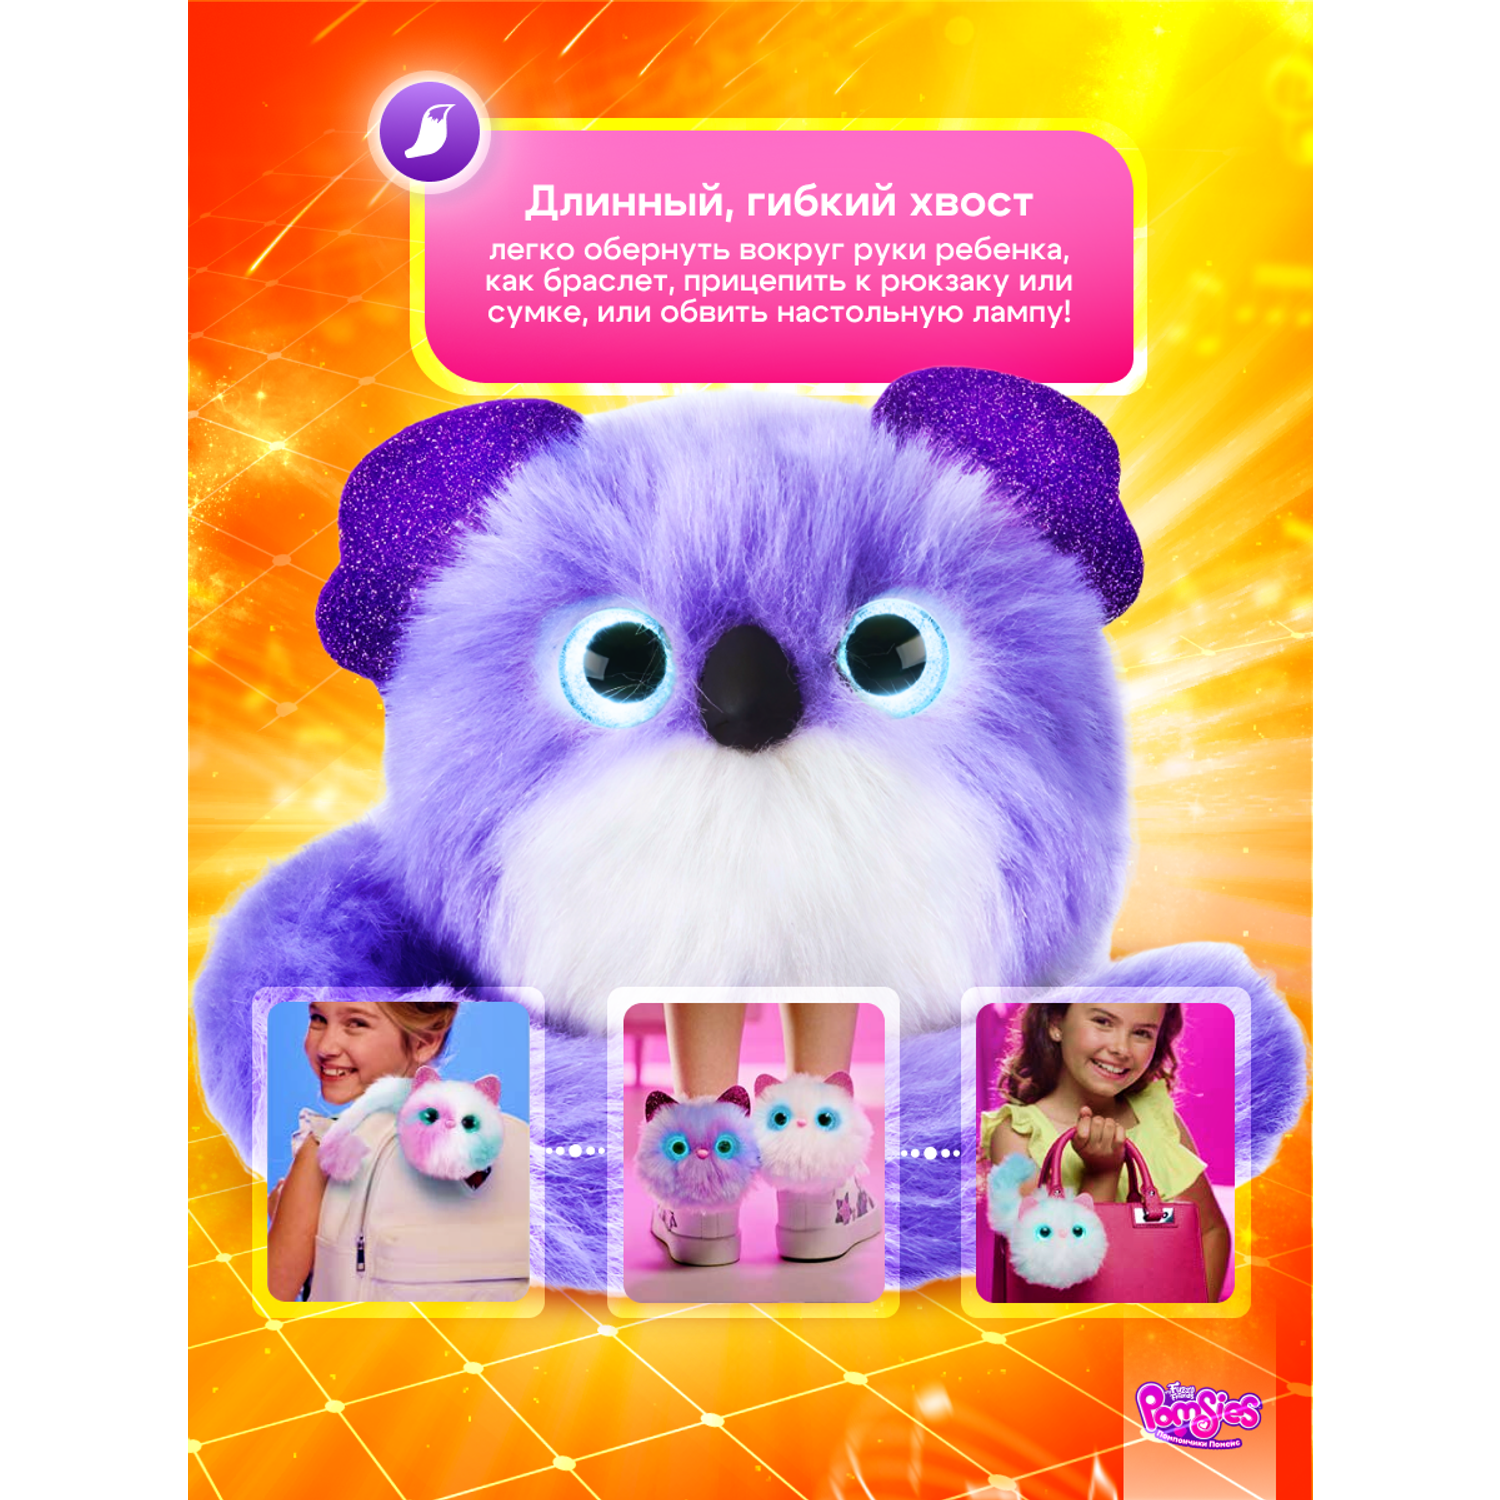 Интерактивная игрушка My Fuzzy Friends Pomsies коала Клои - фото 6